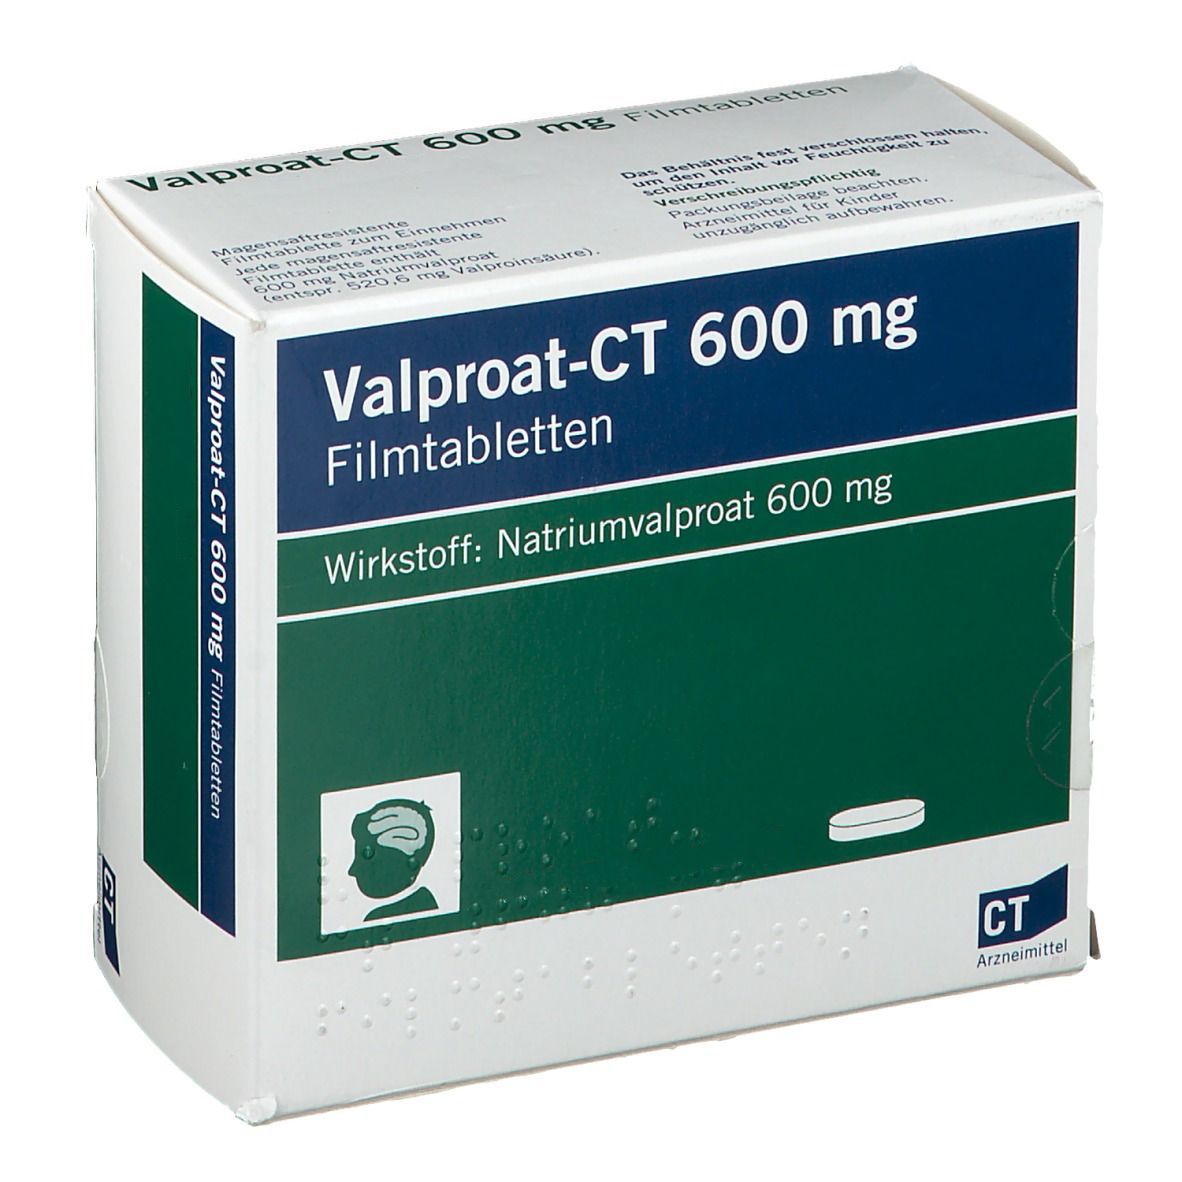 Valproat-CT 600 mg